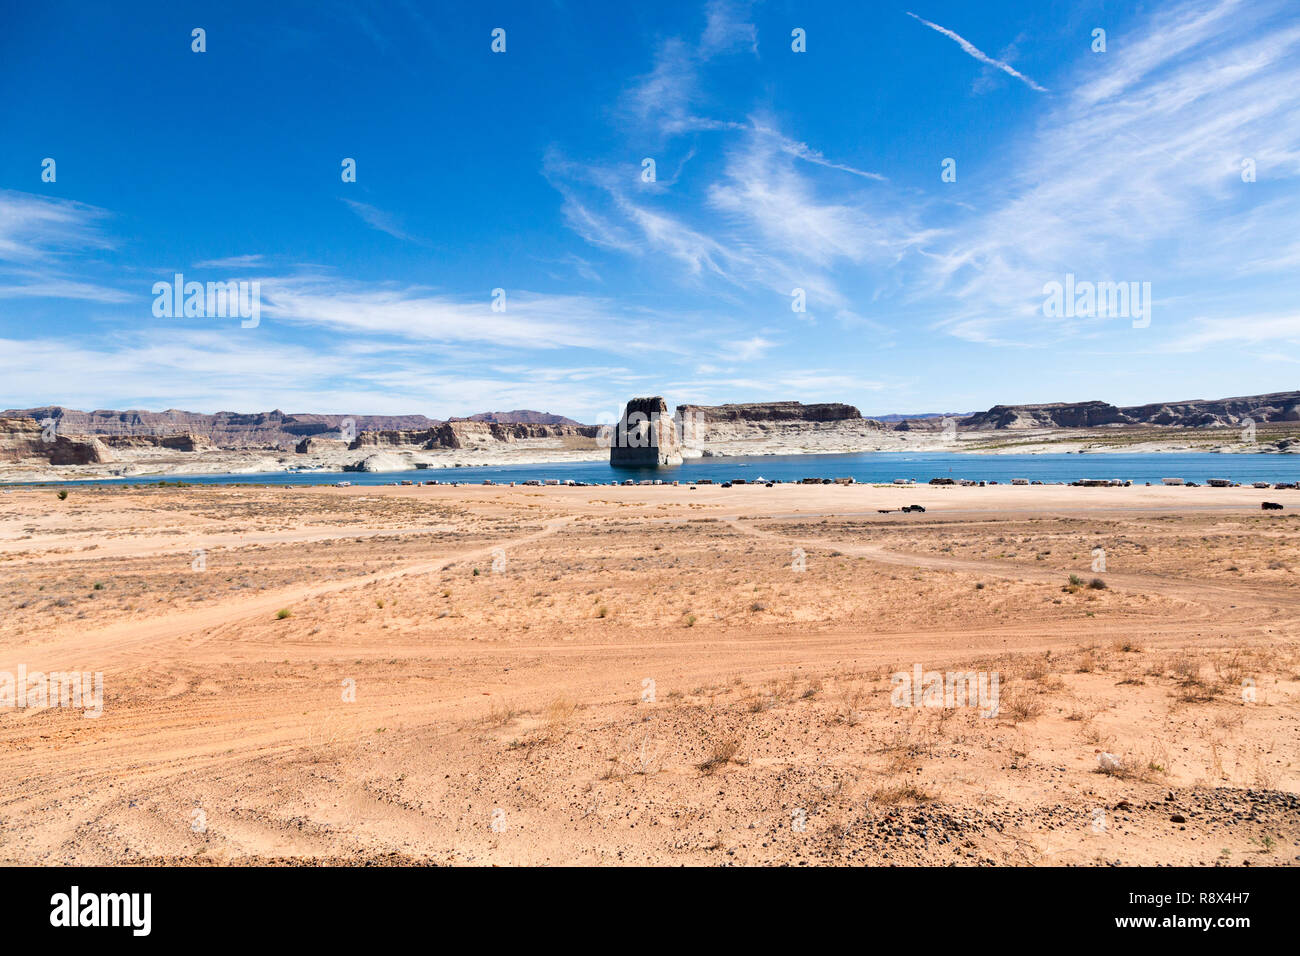 Le lac Powell est un réservoir sur la rivière Colorado, chevauchant la frontière entre l'Utah et l'Arizona, United States. La plus grande partie du lac Powell est situé à Uta Banque D'Images